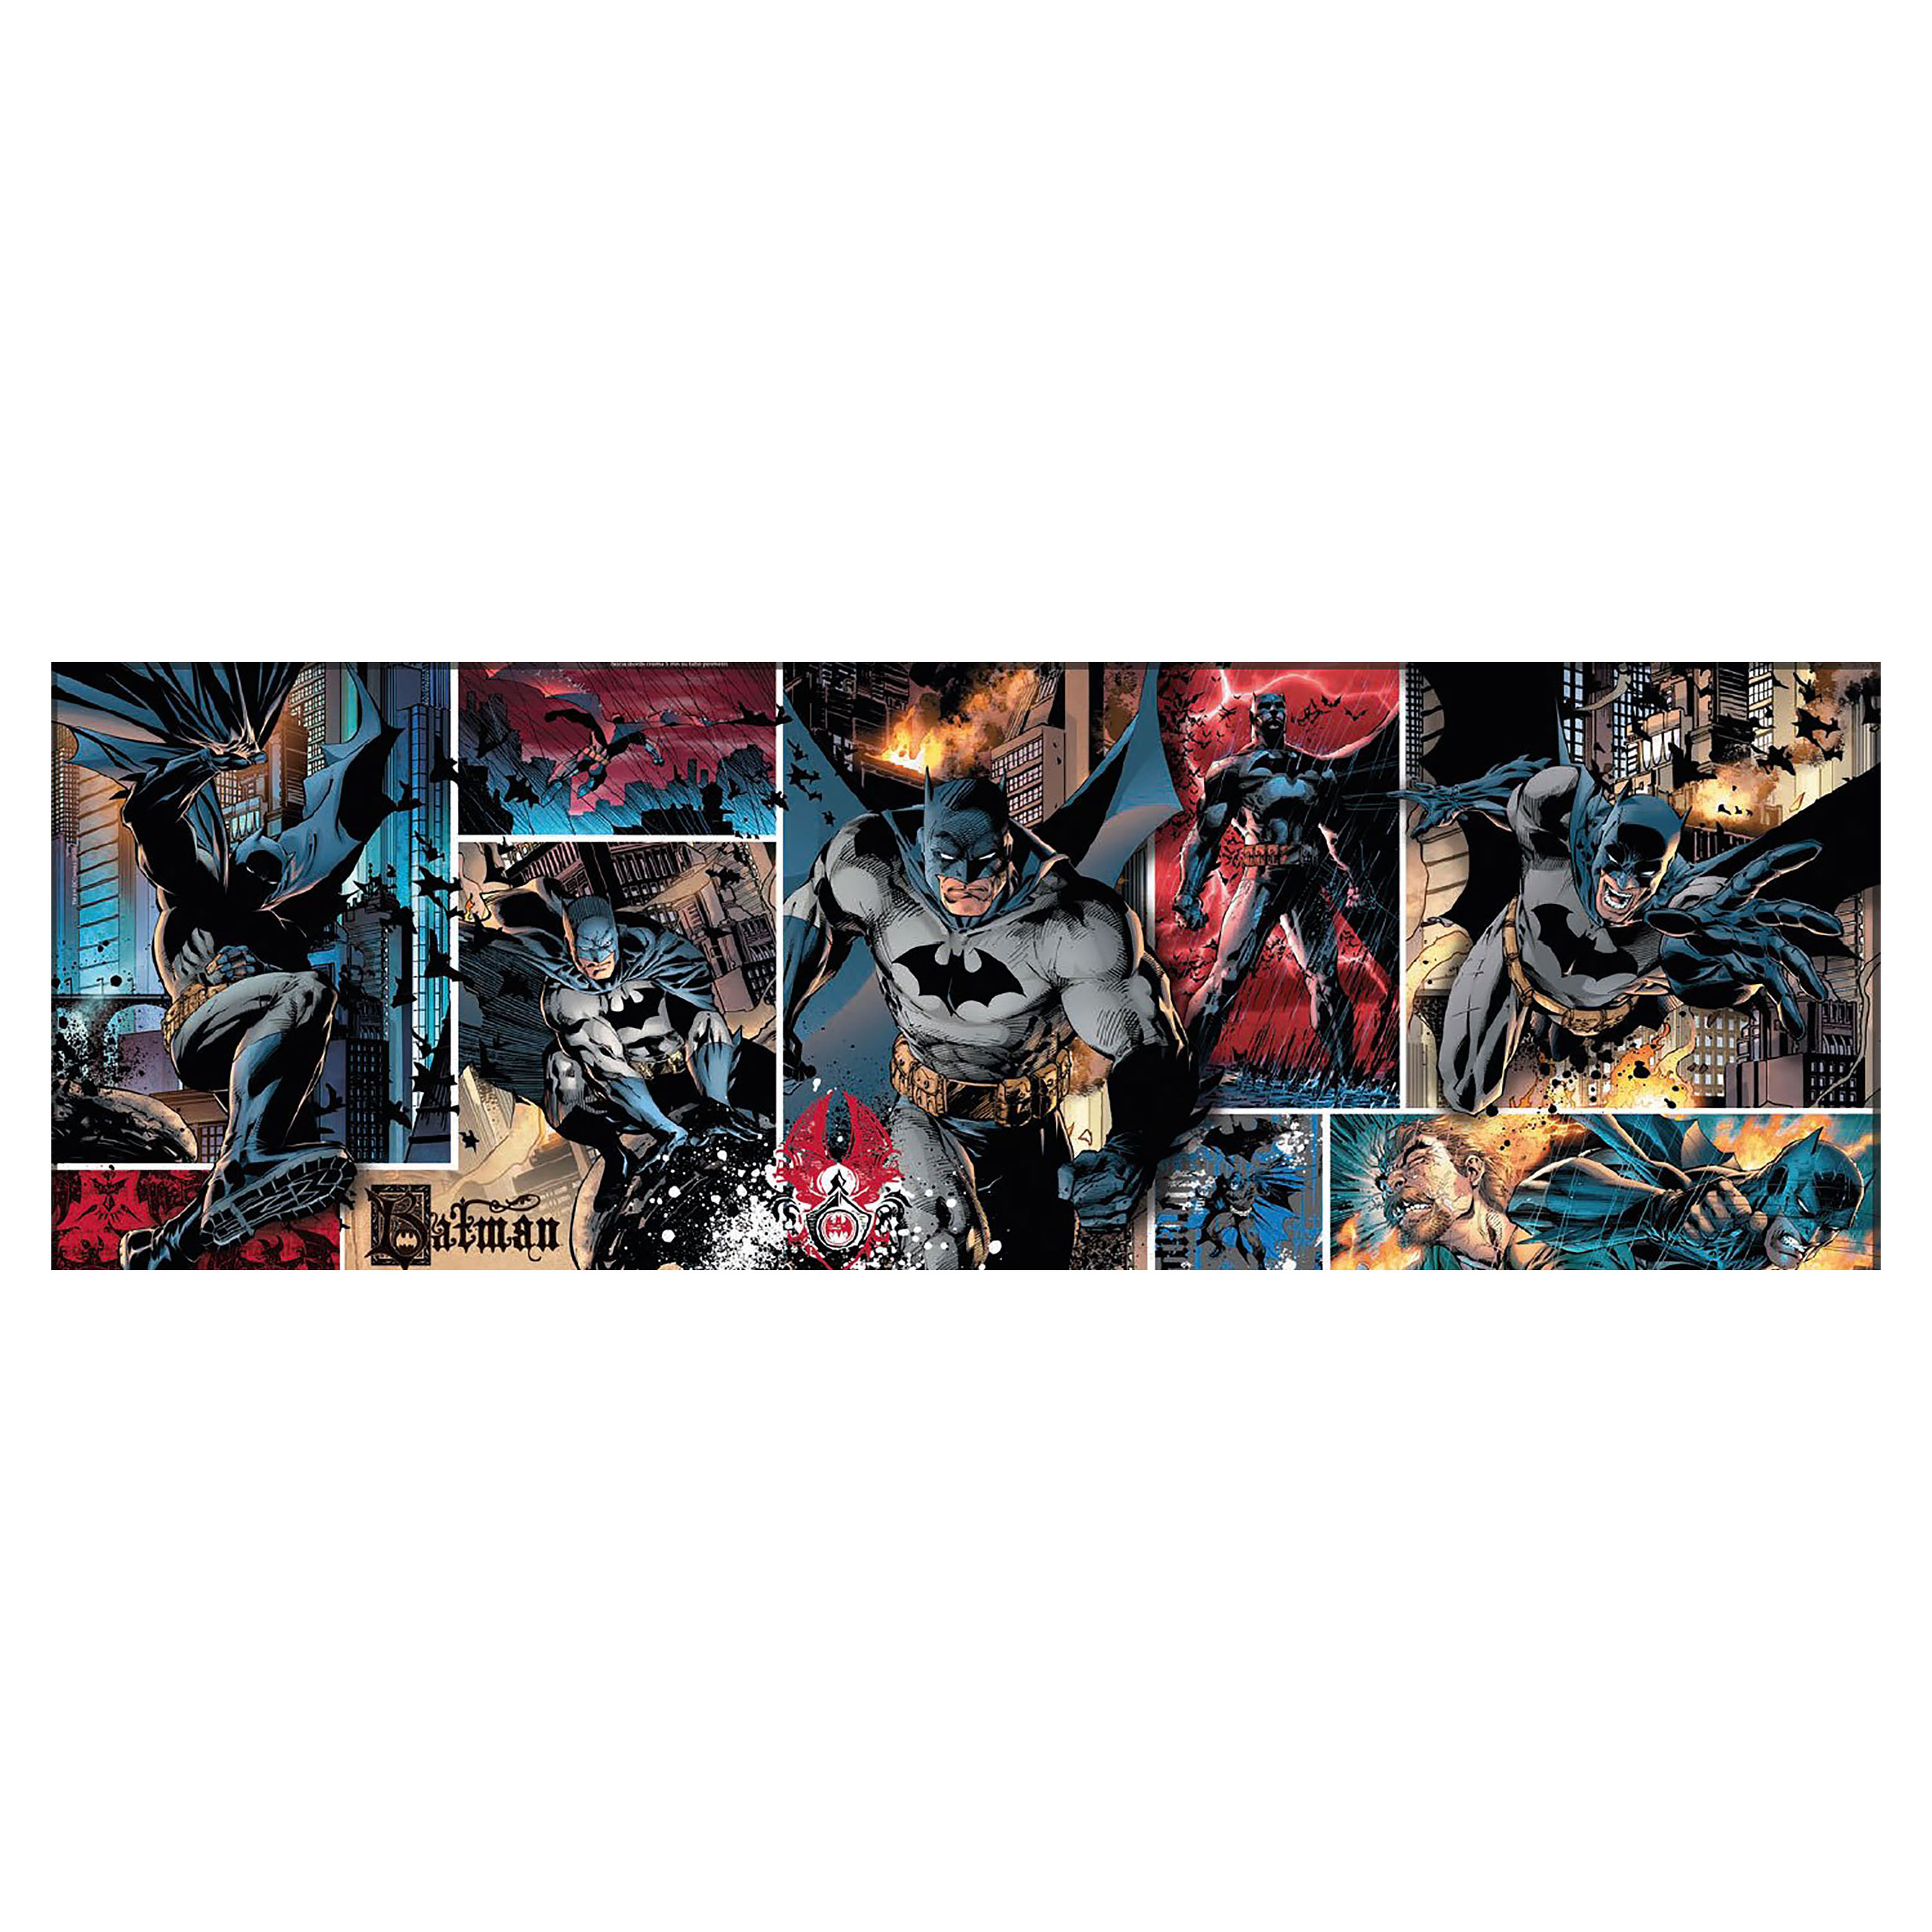 Batman - Puzzle Panorama de Bande Dessinée